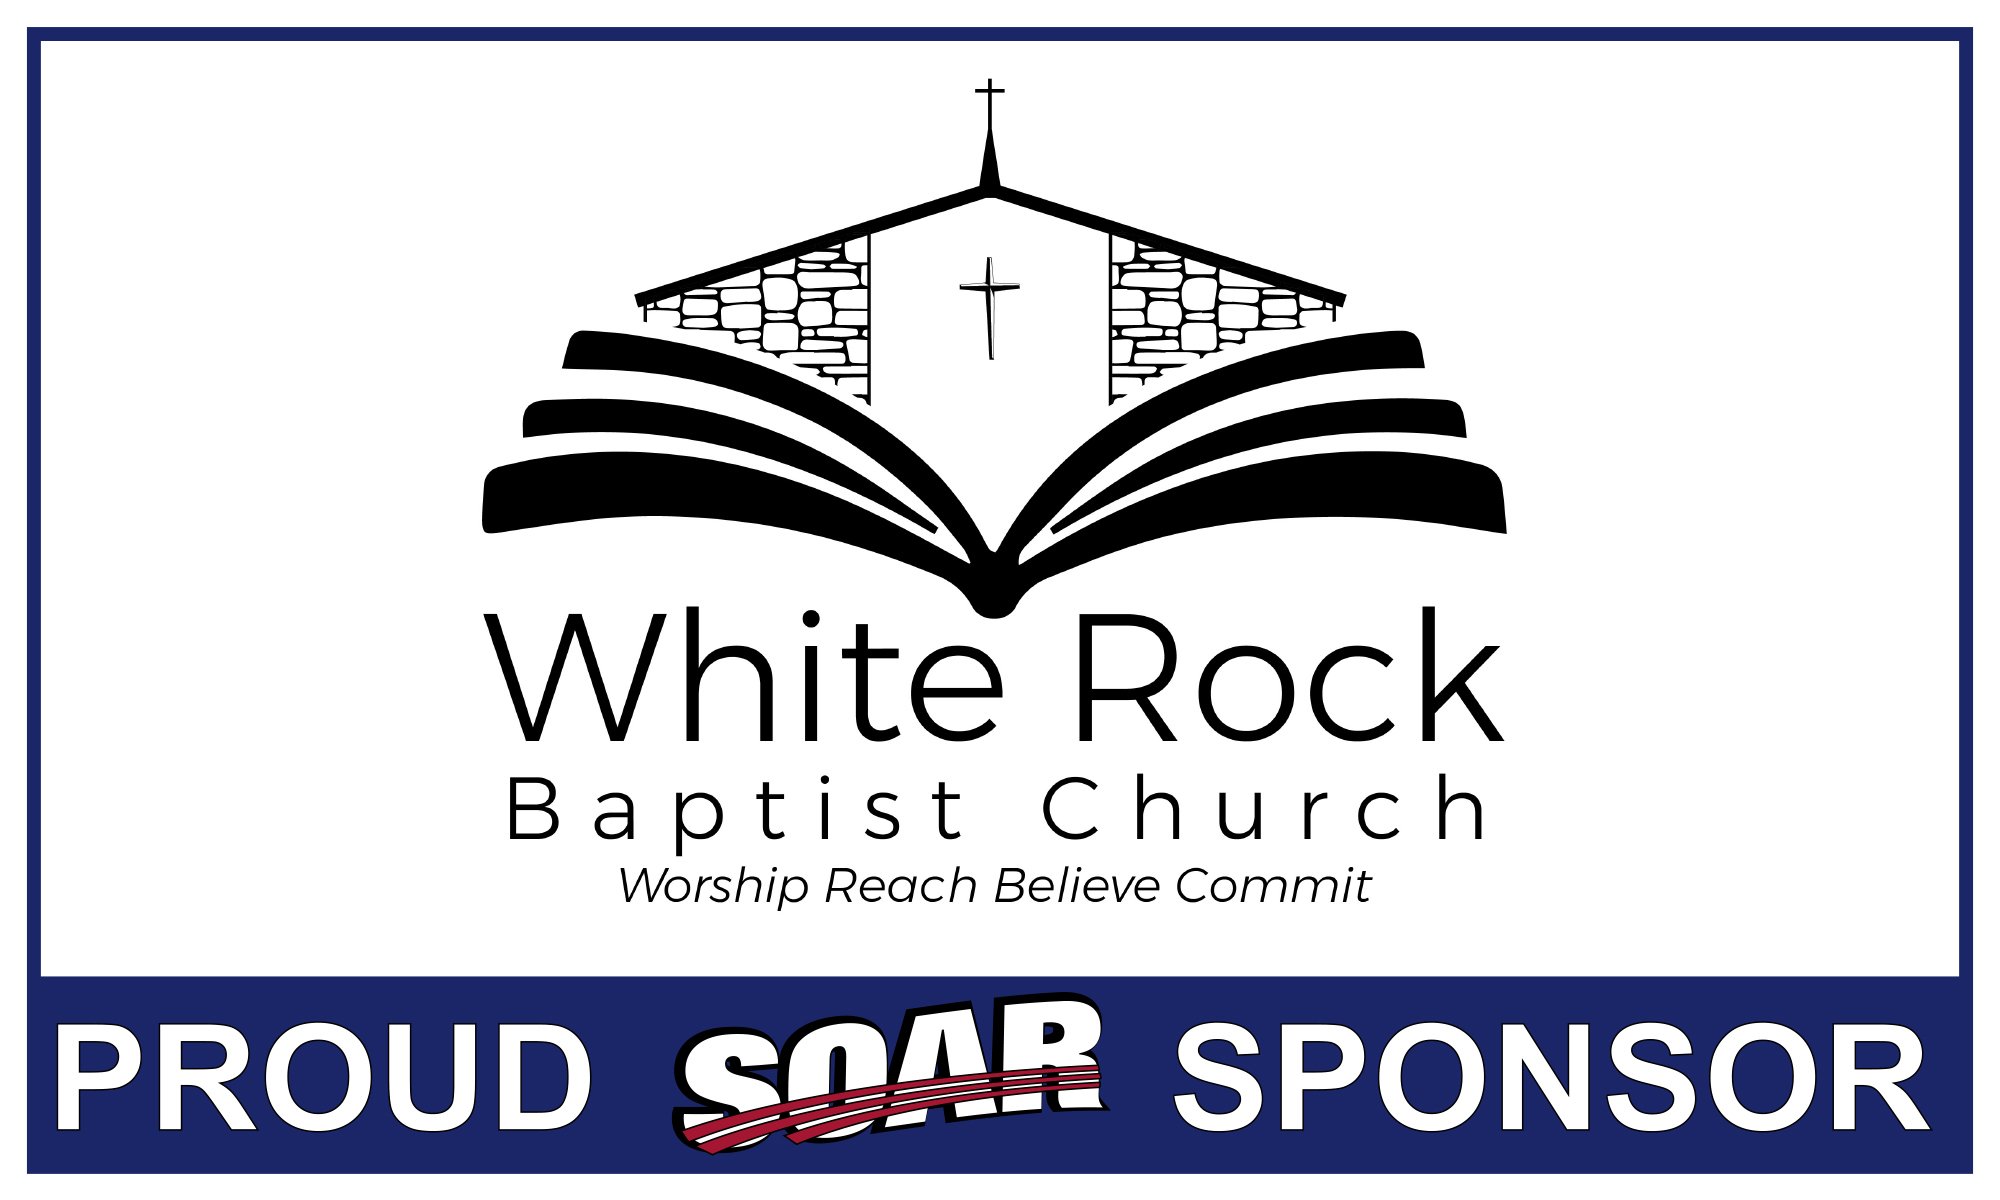 White Rock Baptist Church banner.jpg